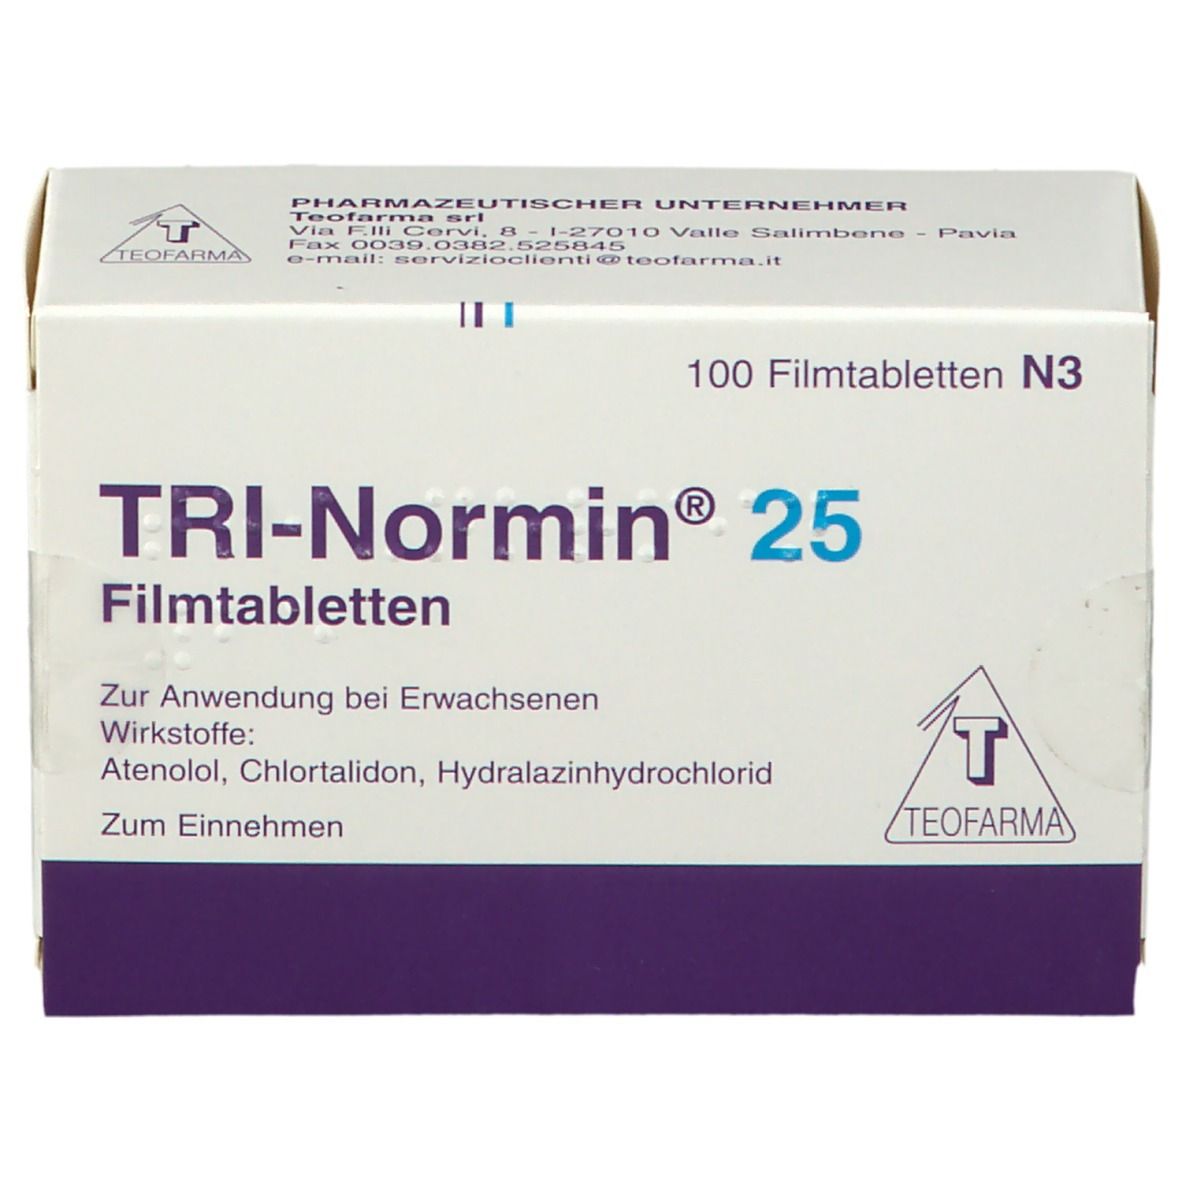 TRI-Normin® 25